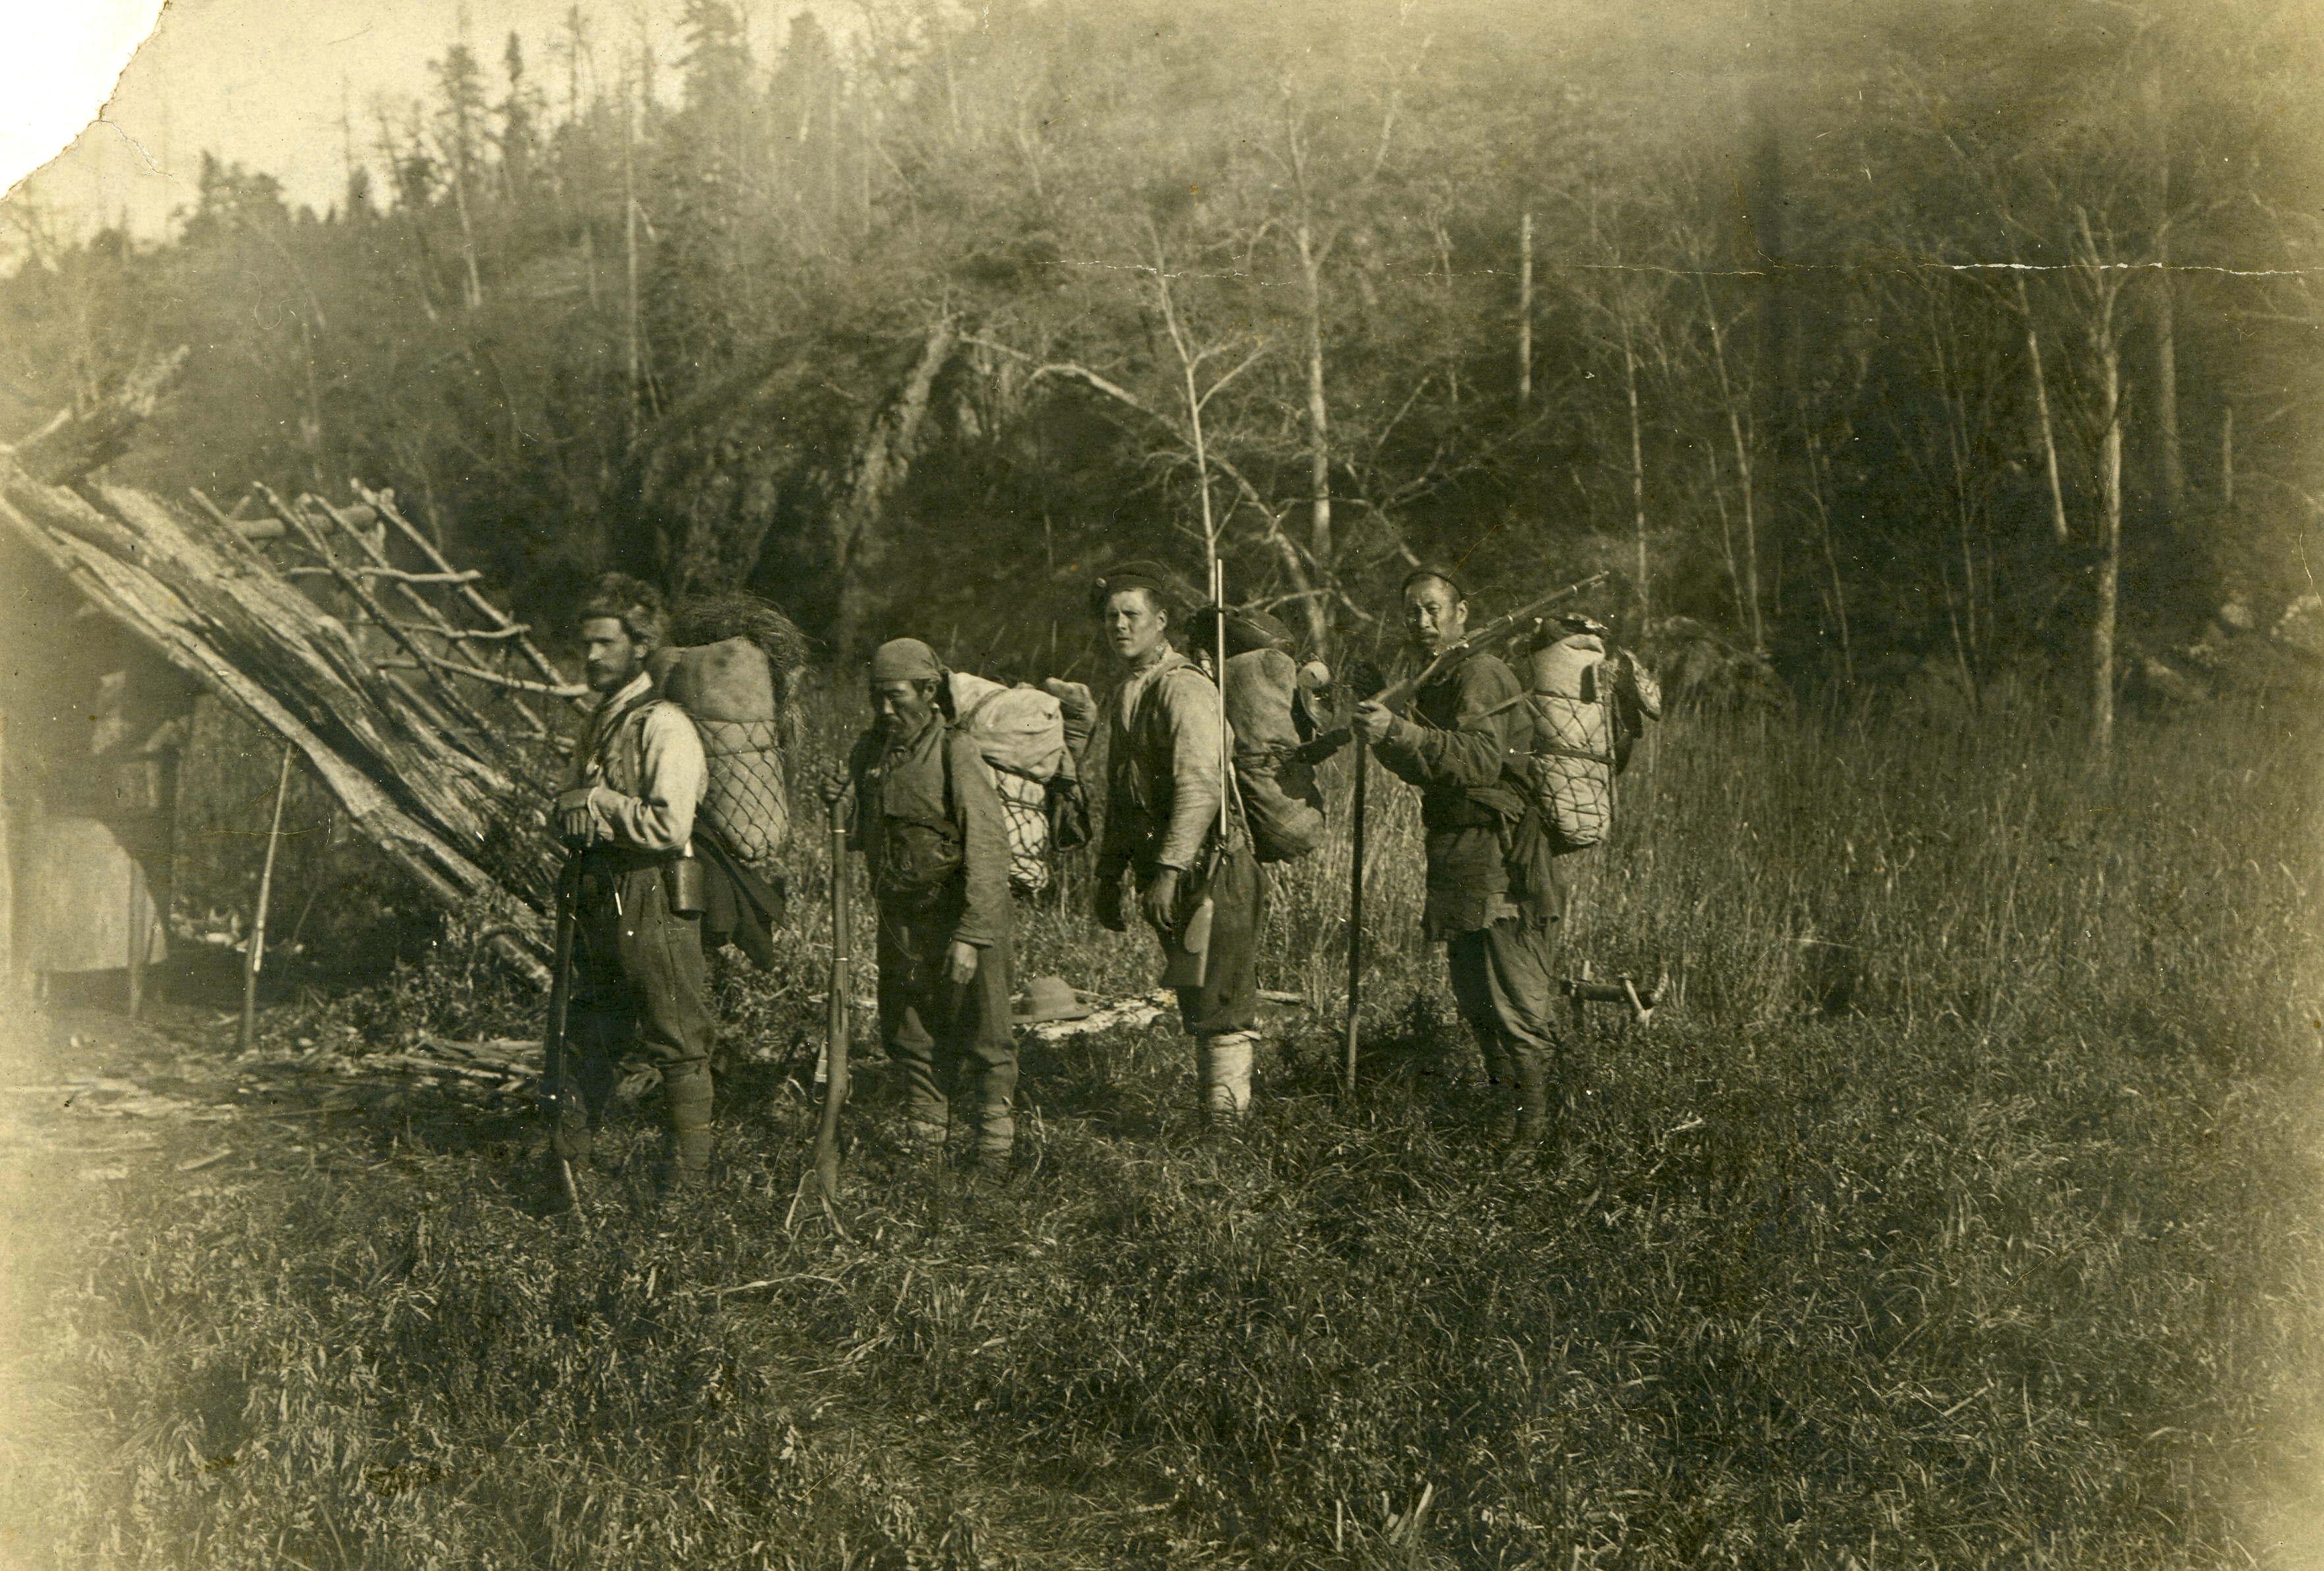 左から、ウラジーミル・アルセーニエフ、デルス・ウザラー、その他の探検の参加者